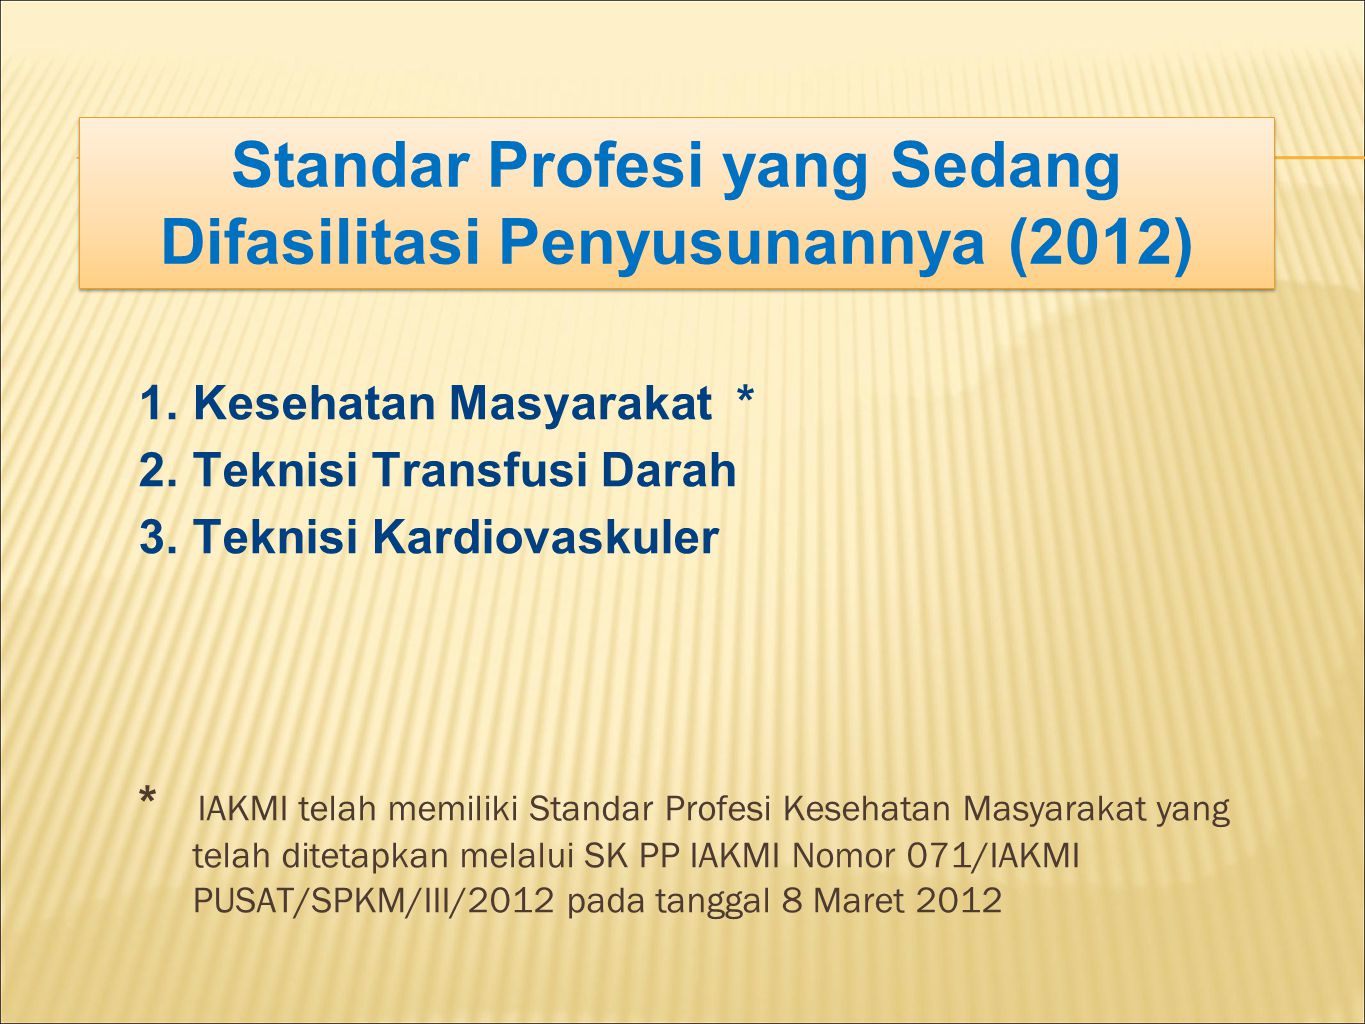 Standar Profesi yang Sedang Difasilitasi Penyusunannya (2012)